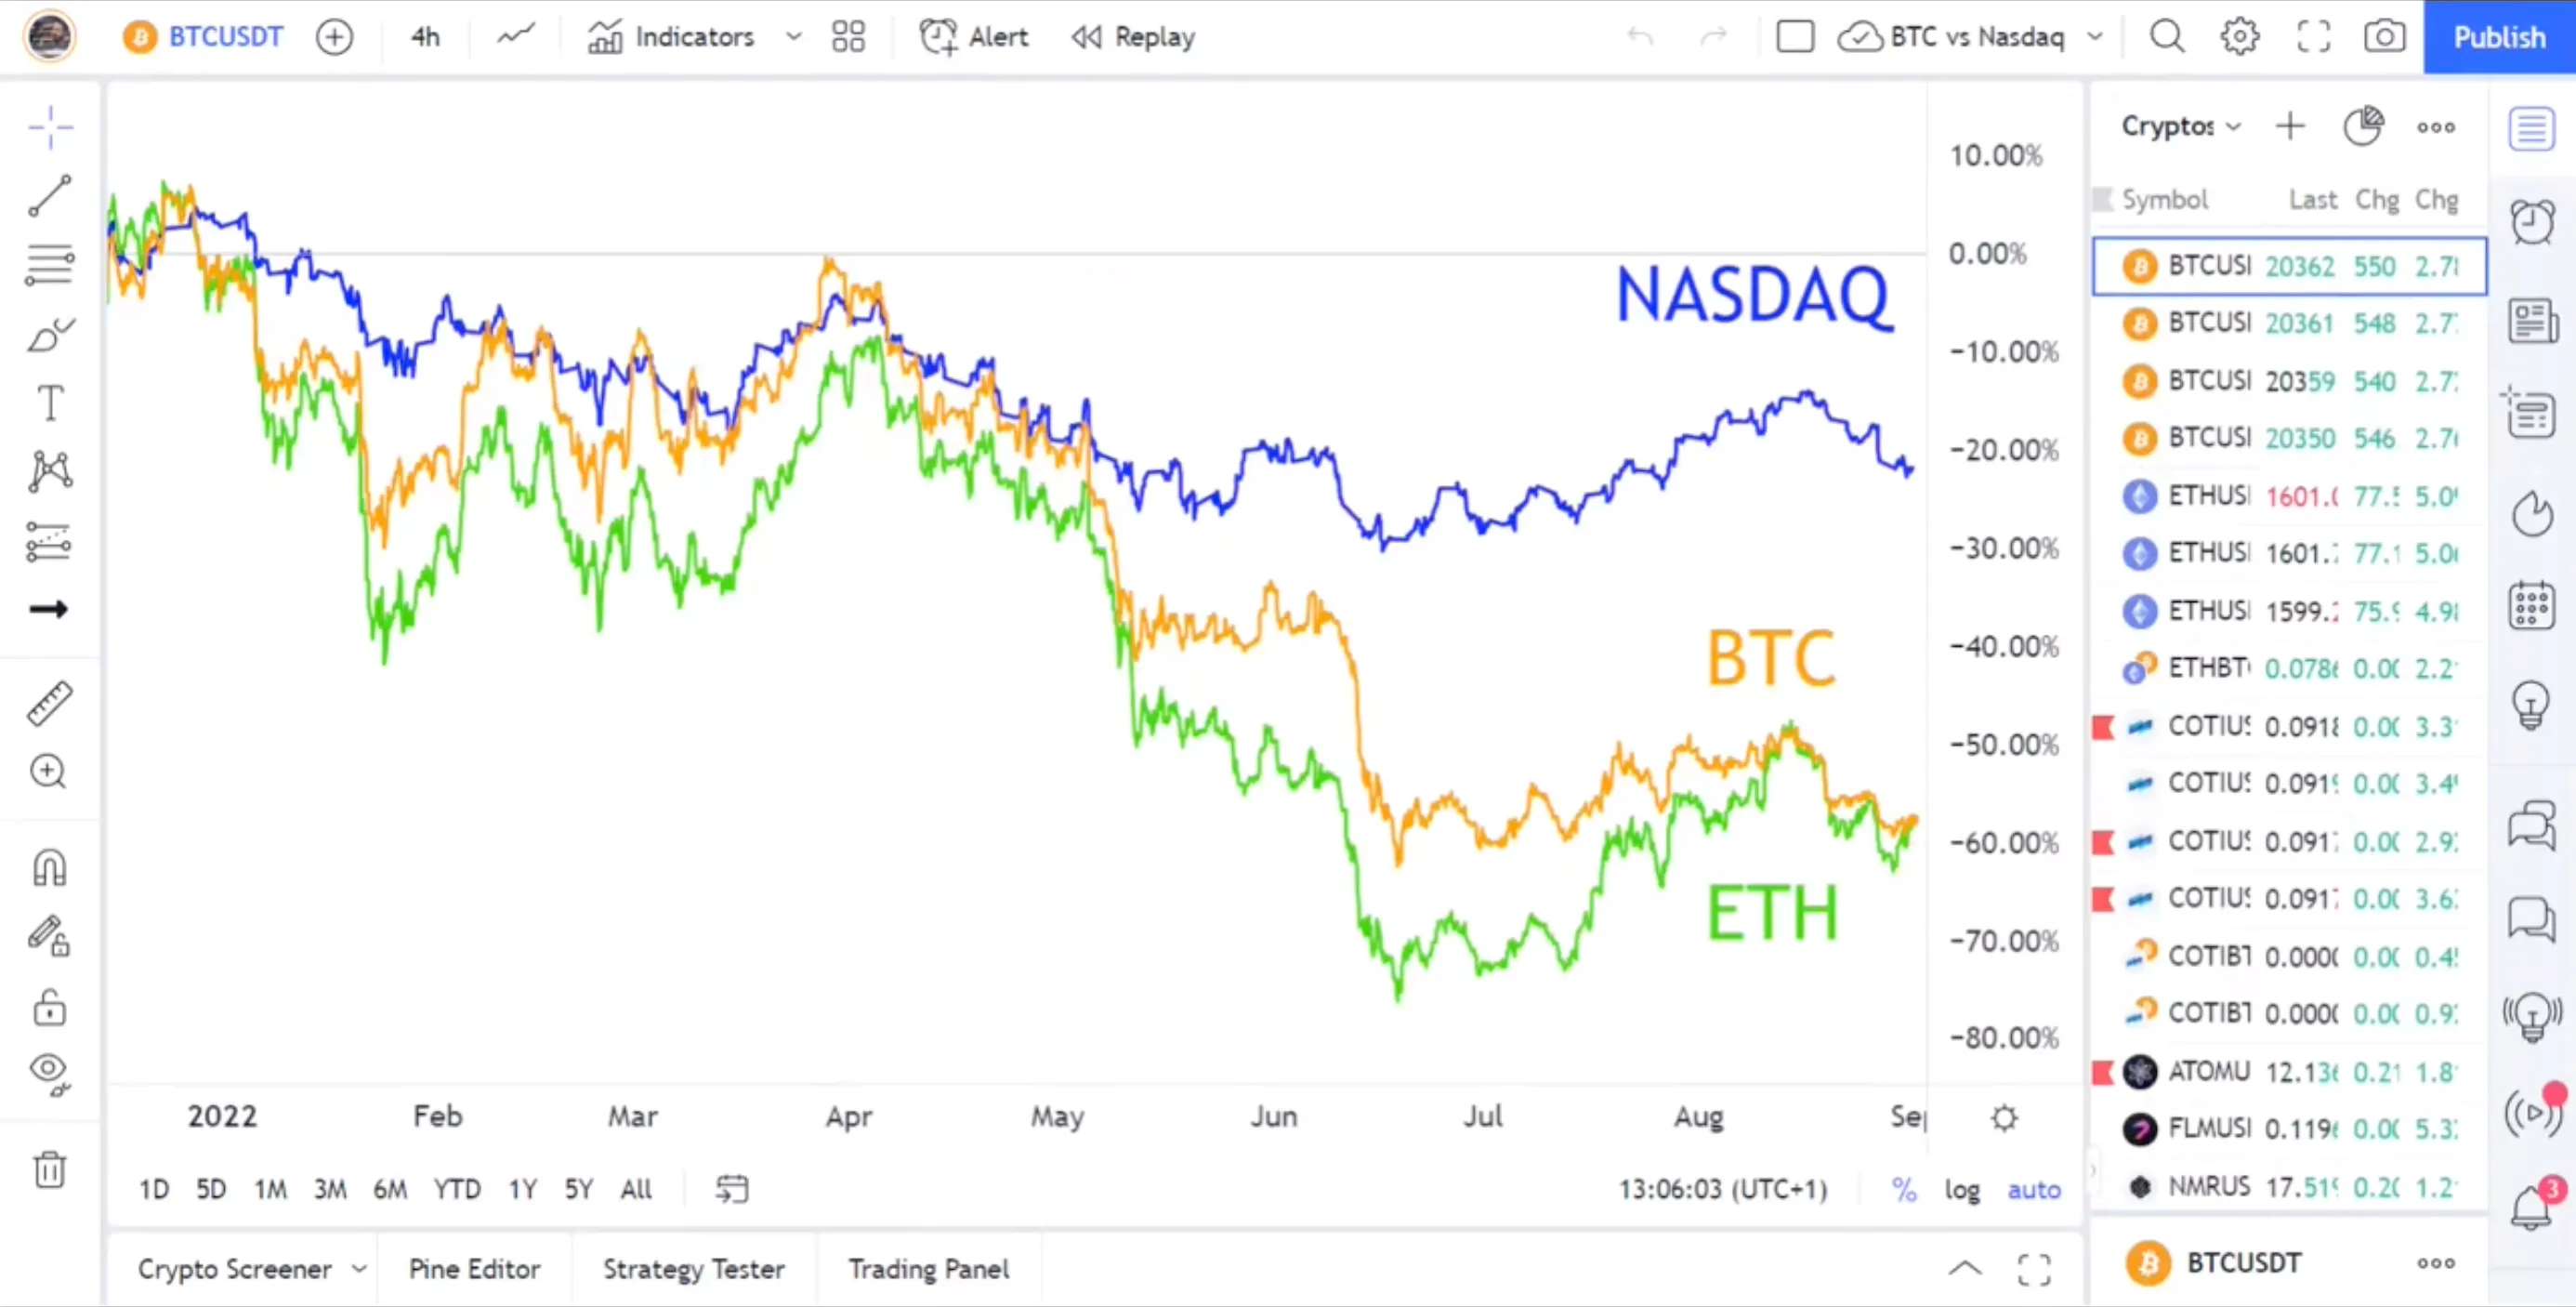 NASDAQ vs. BTC vs. ETH